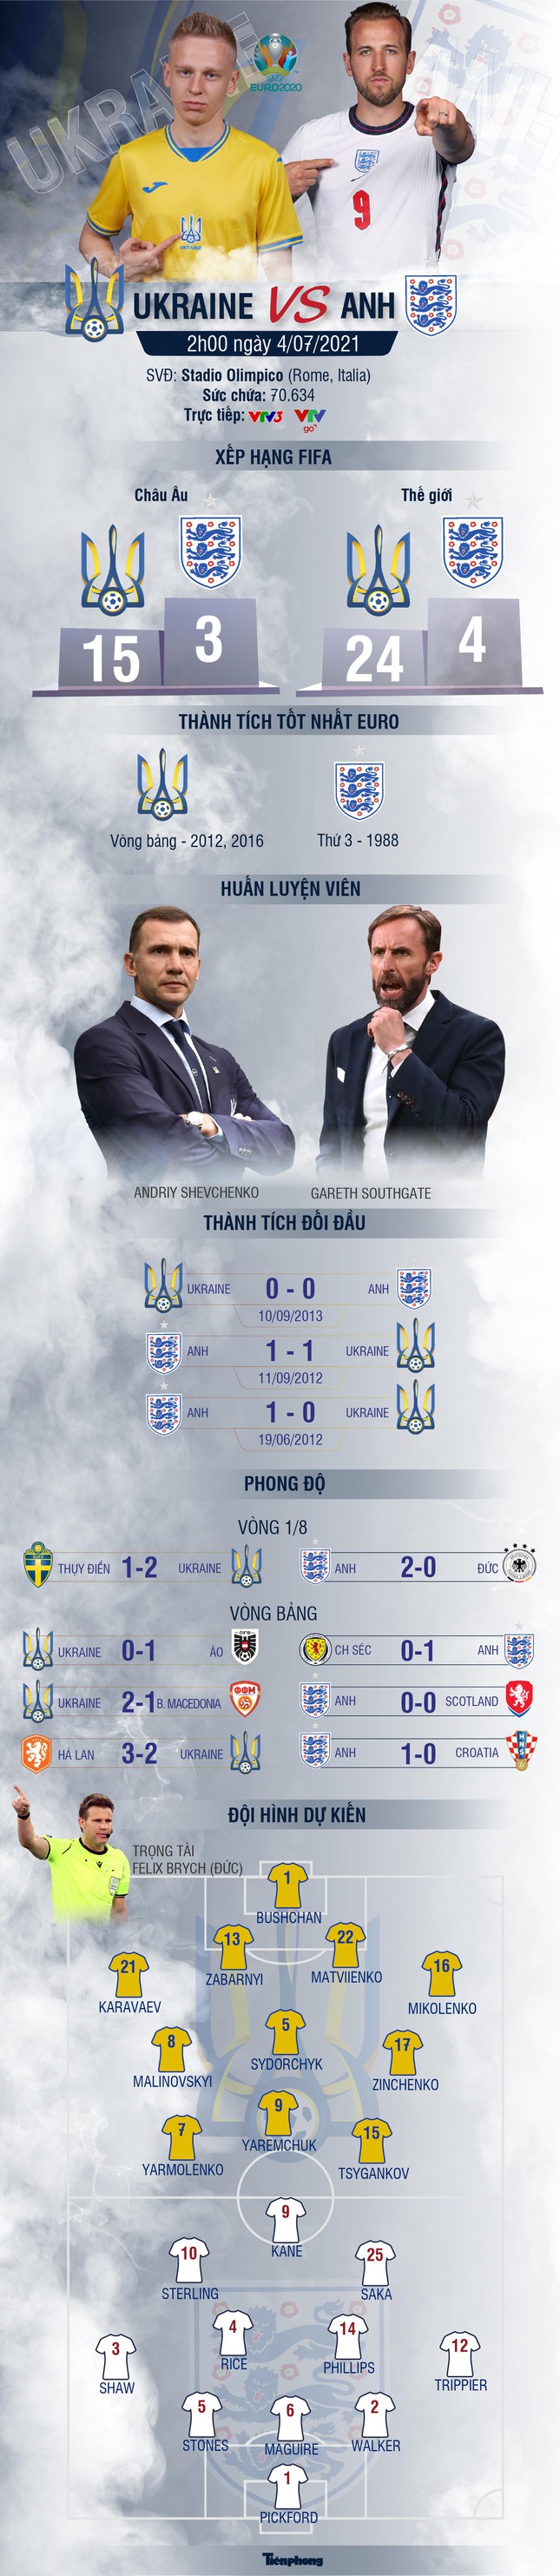 Tứ kết EURO 2020 Ukraine - Anh: 'Tam sư' thẳng tiến - Ảnh 1.